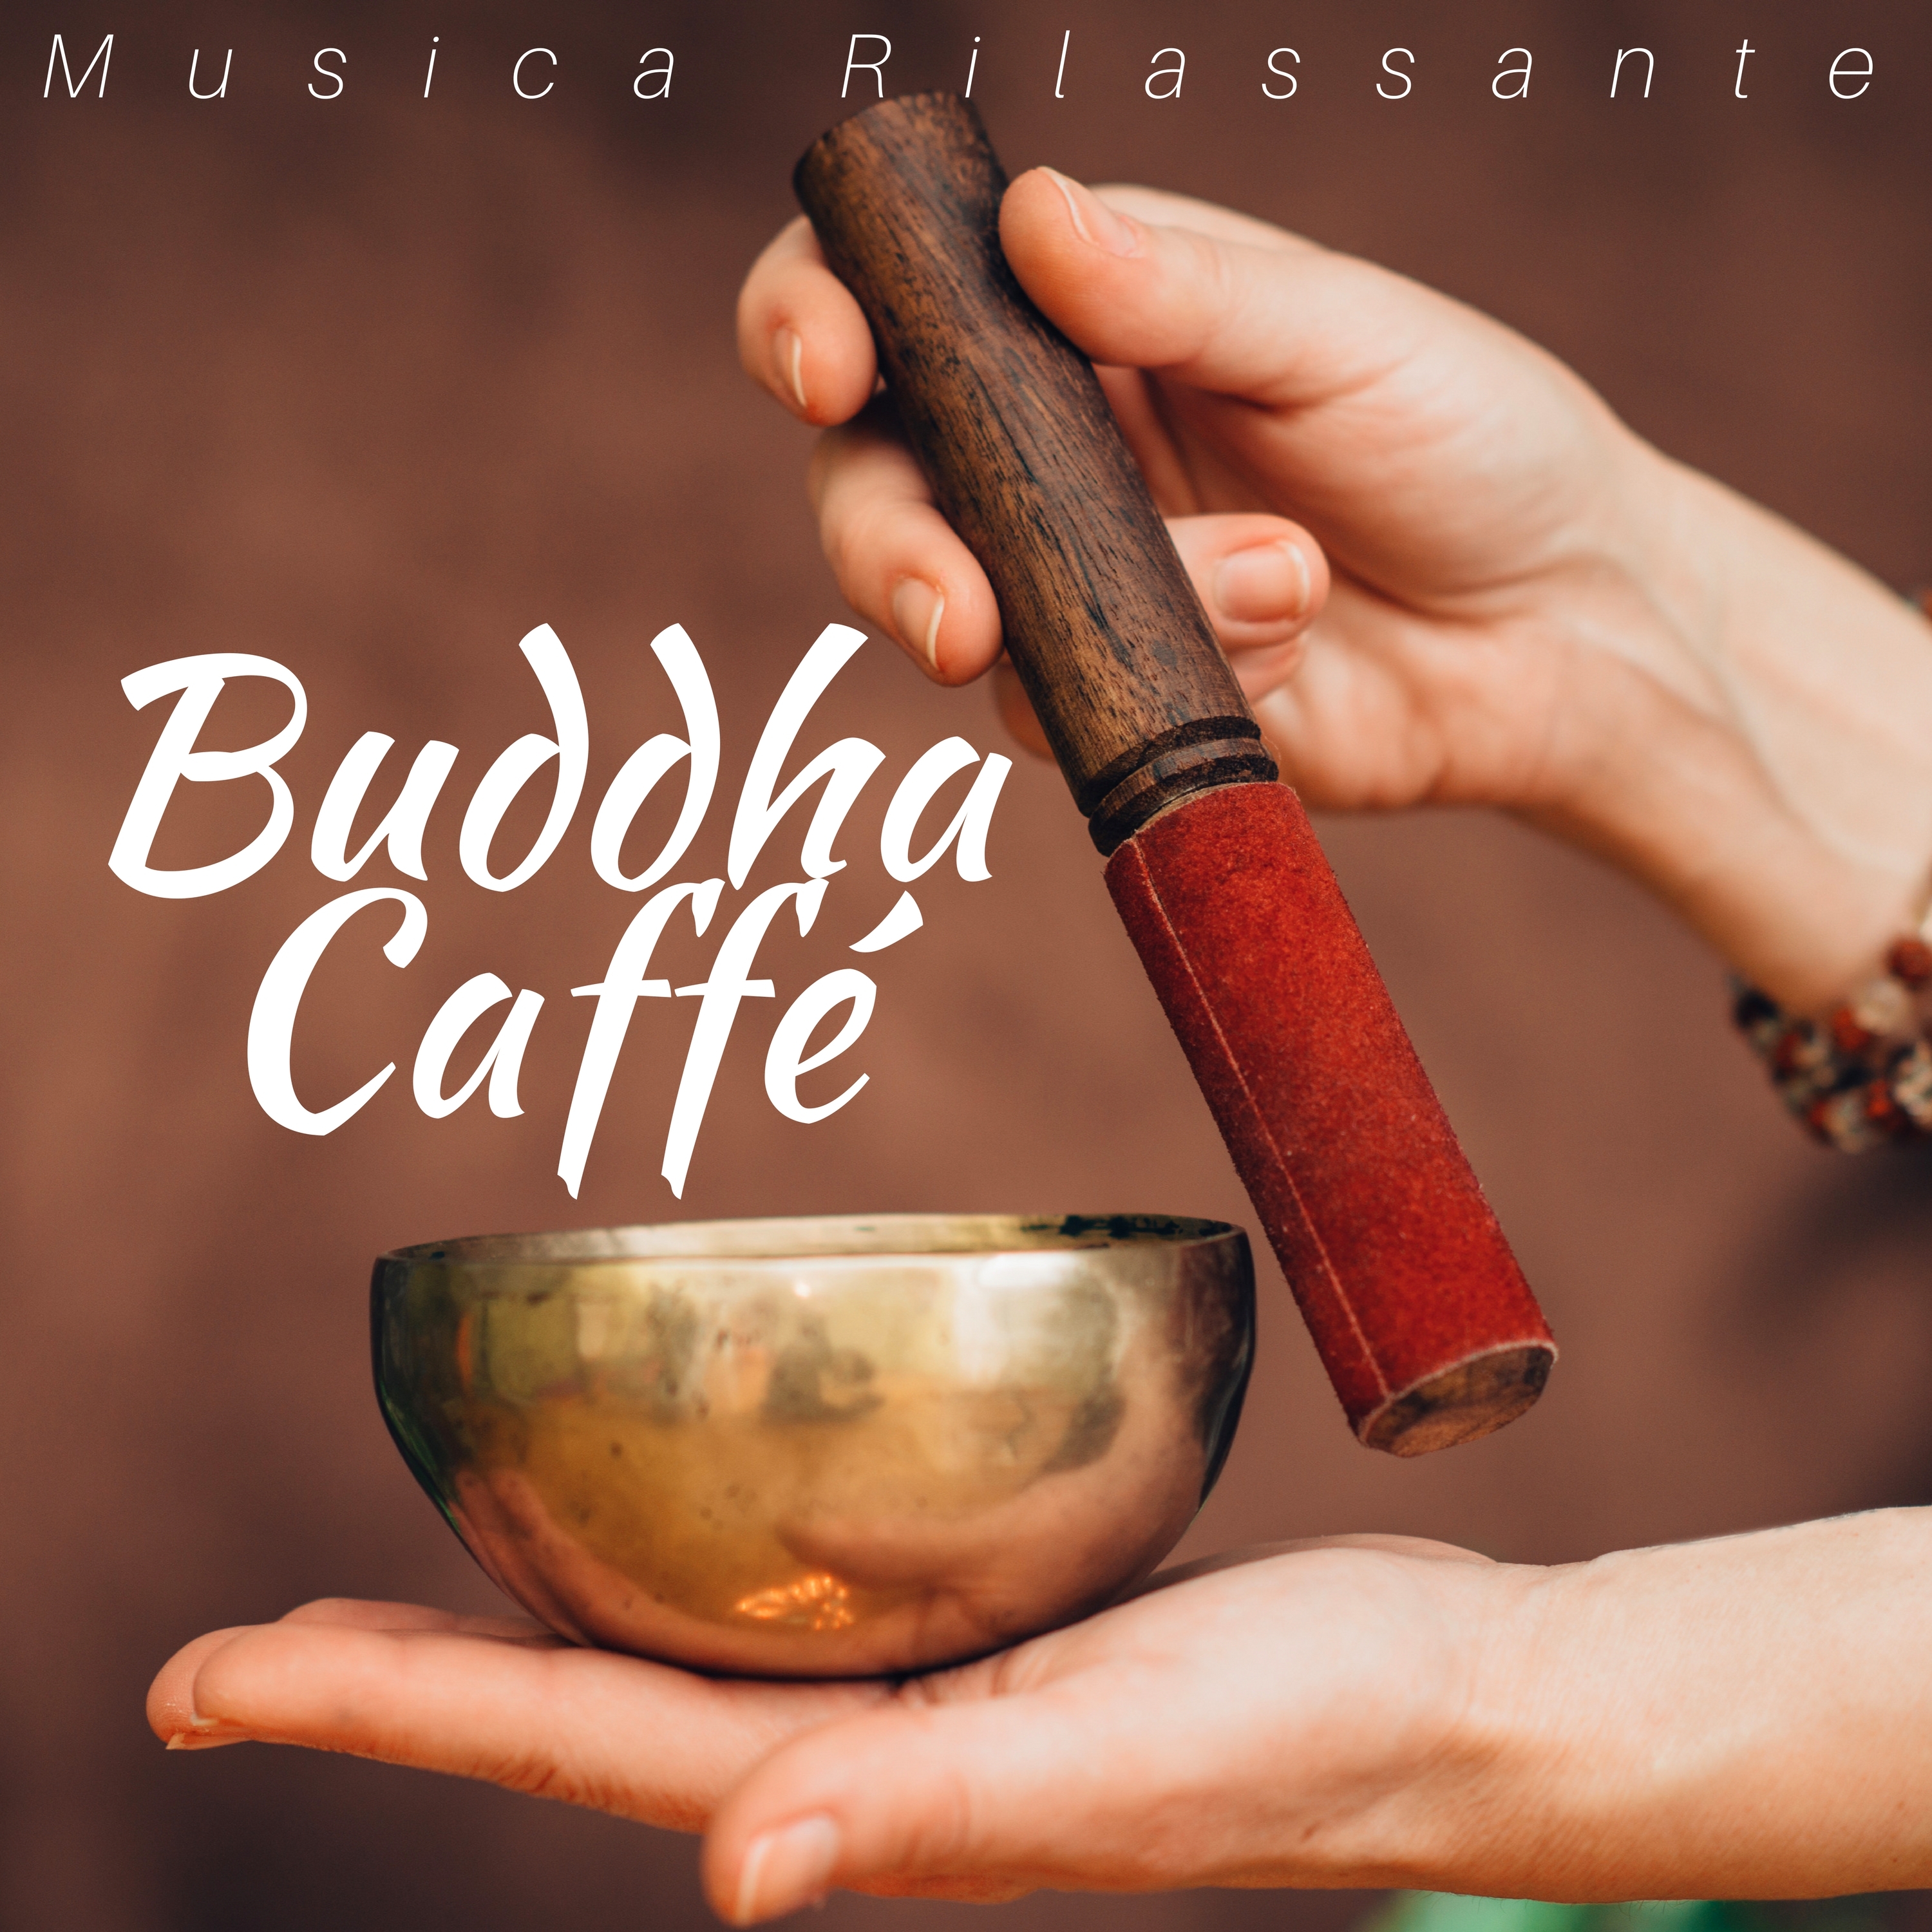 Buddha Caffe